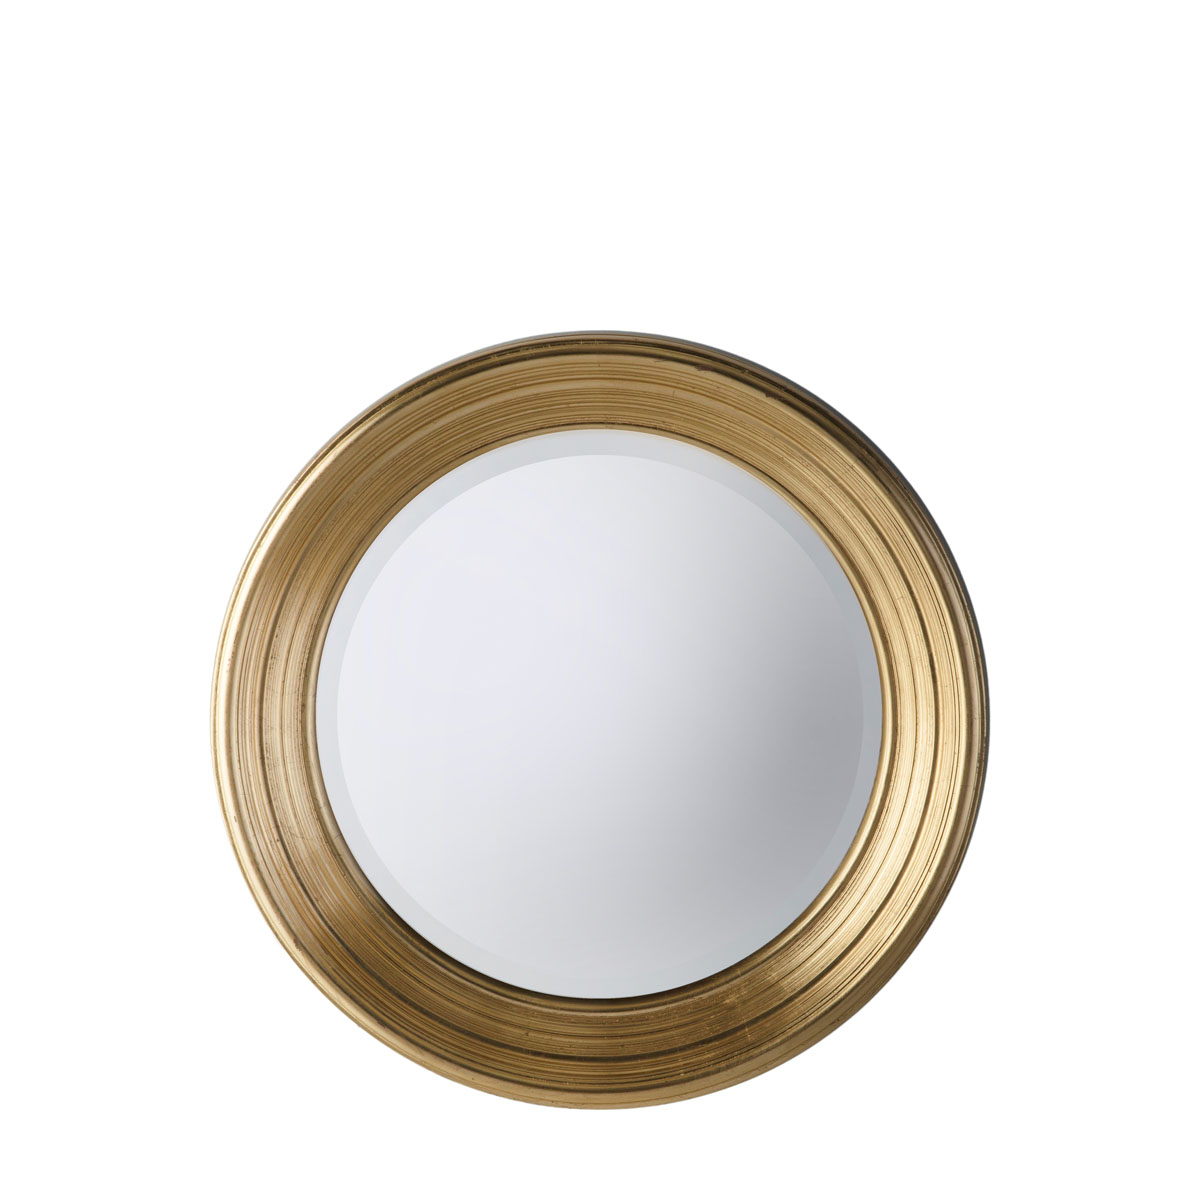 Chaplin Round Mirror Gold 650x650mm